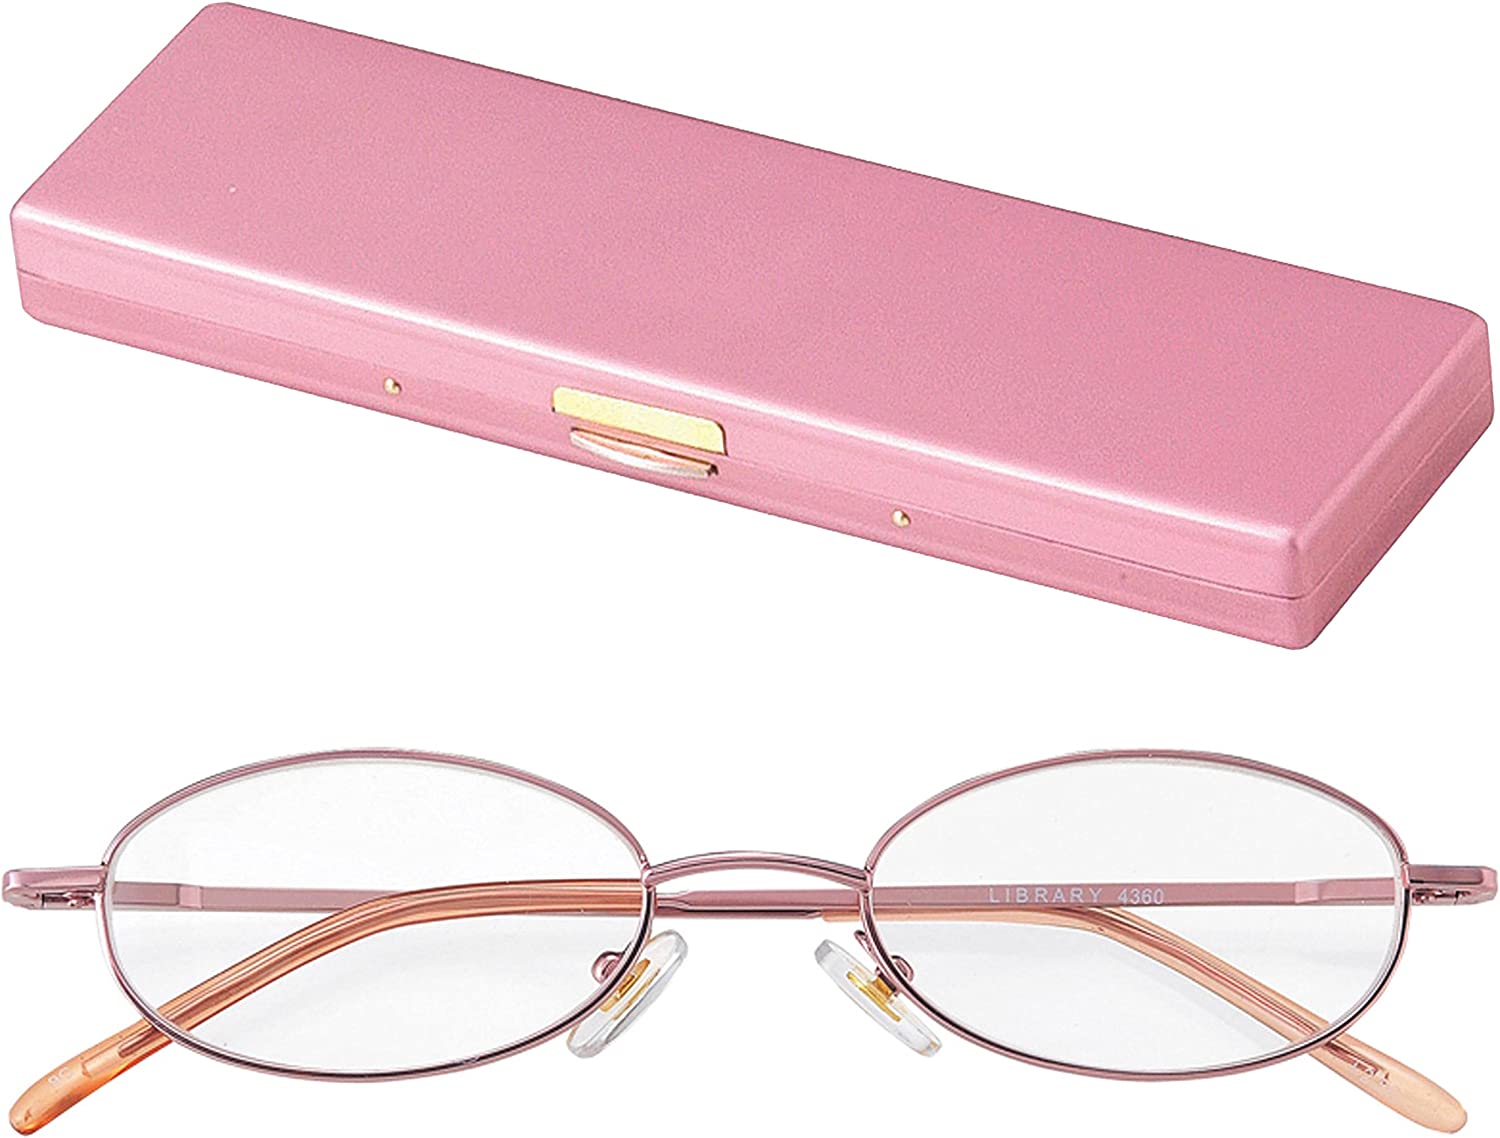 ライブラリーコンパクト 薄型 軽量 ワイドな 視野の シニアグラス 老眼鏡 バネ丁番 女性 婦人用 +3.50 (専用ケース付)